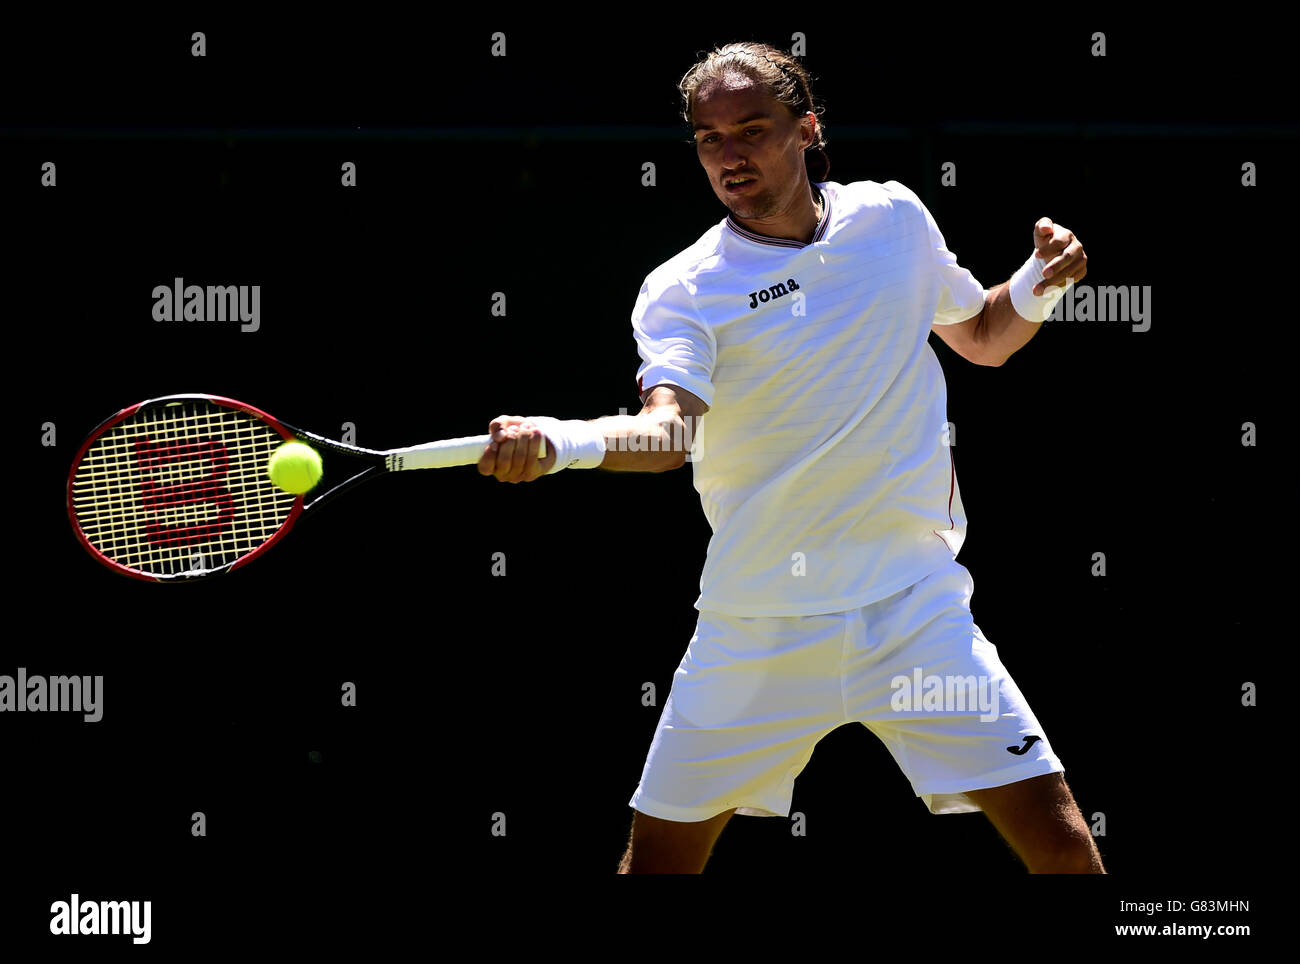 Alexandr Dolgopolov in azione contro Kyle Edmund durante il secondo giorno dei Campionati di Wimbledon all'All England Lawn Tennis and Croquet Club di Wimbledon. Foto Stock